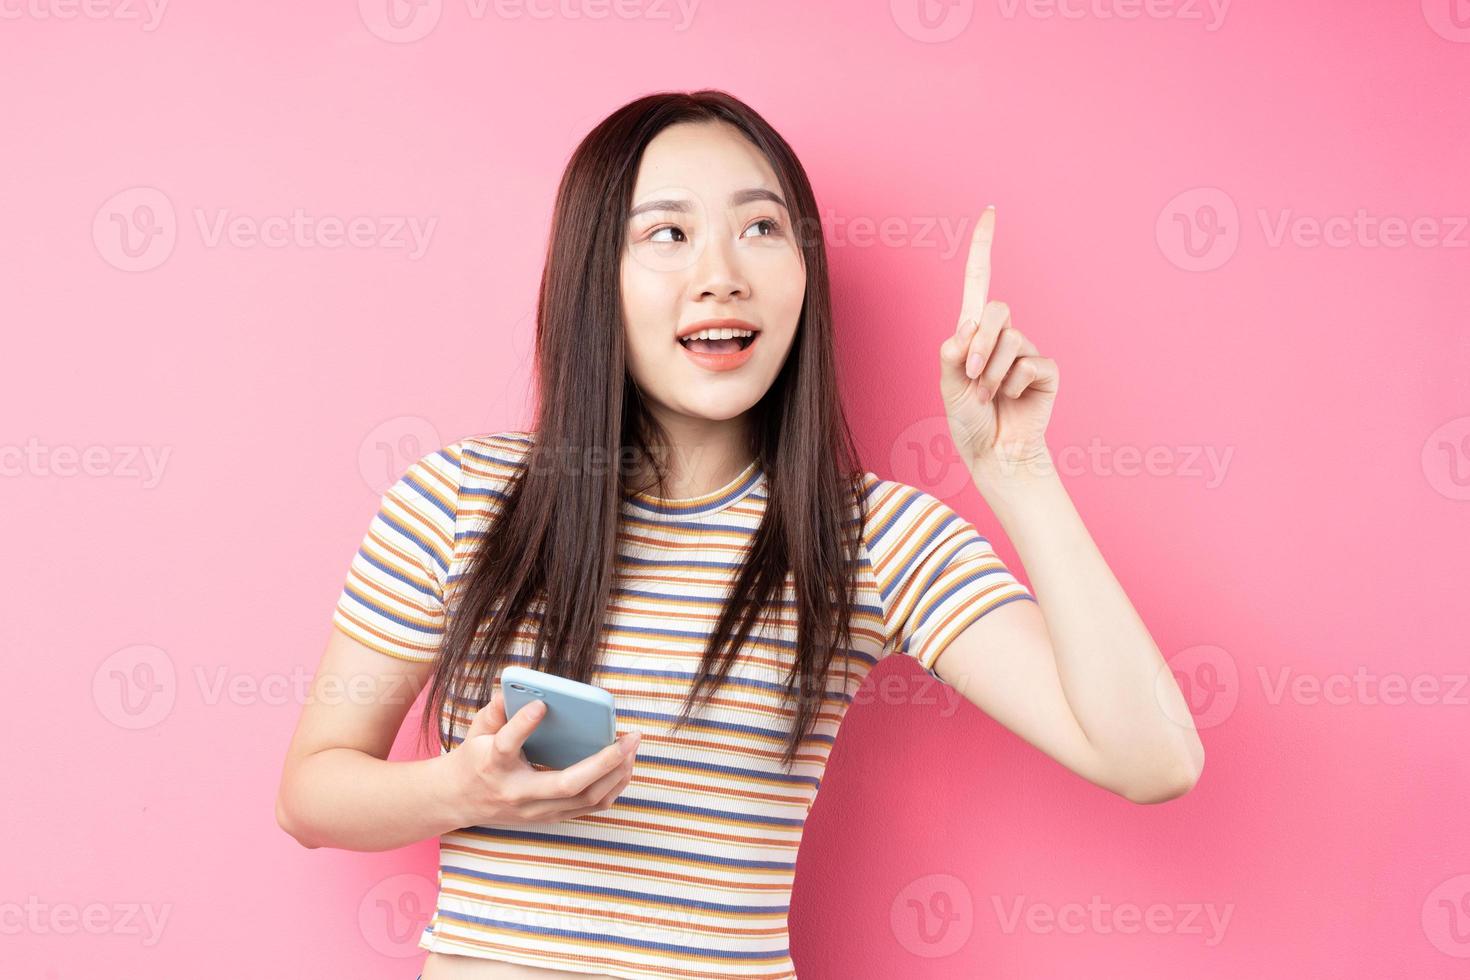 jovem mulher asiática usando smartphone em fundo rosa foto